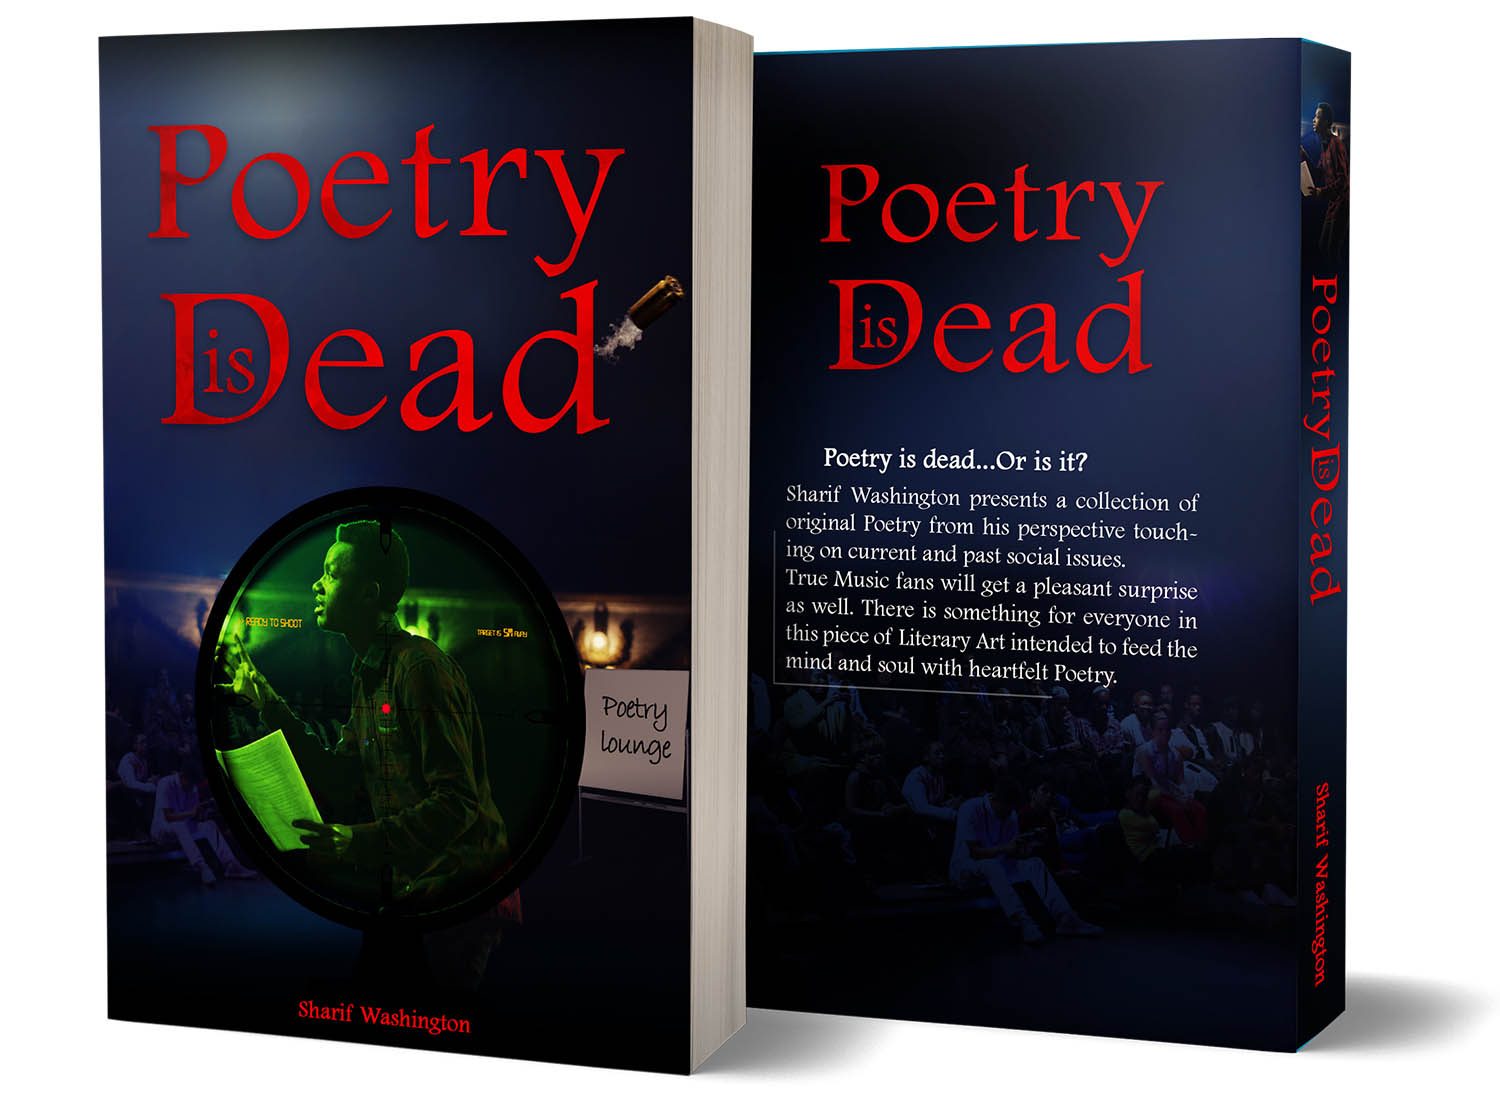 bookconsilio-portfolio-Poetry is dead -paperback-bookcoverdesign